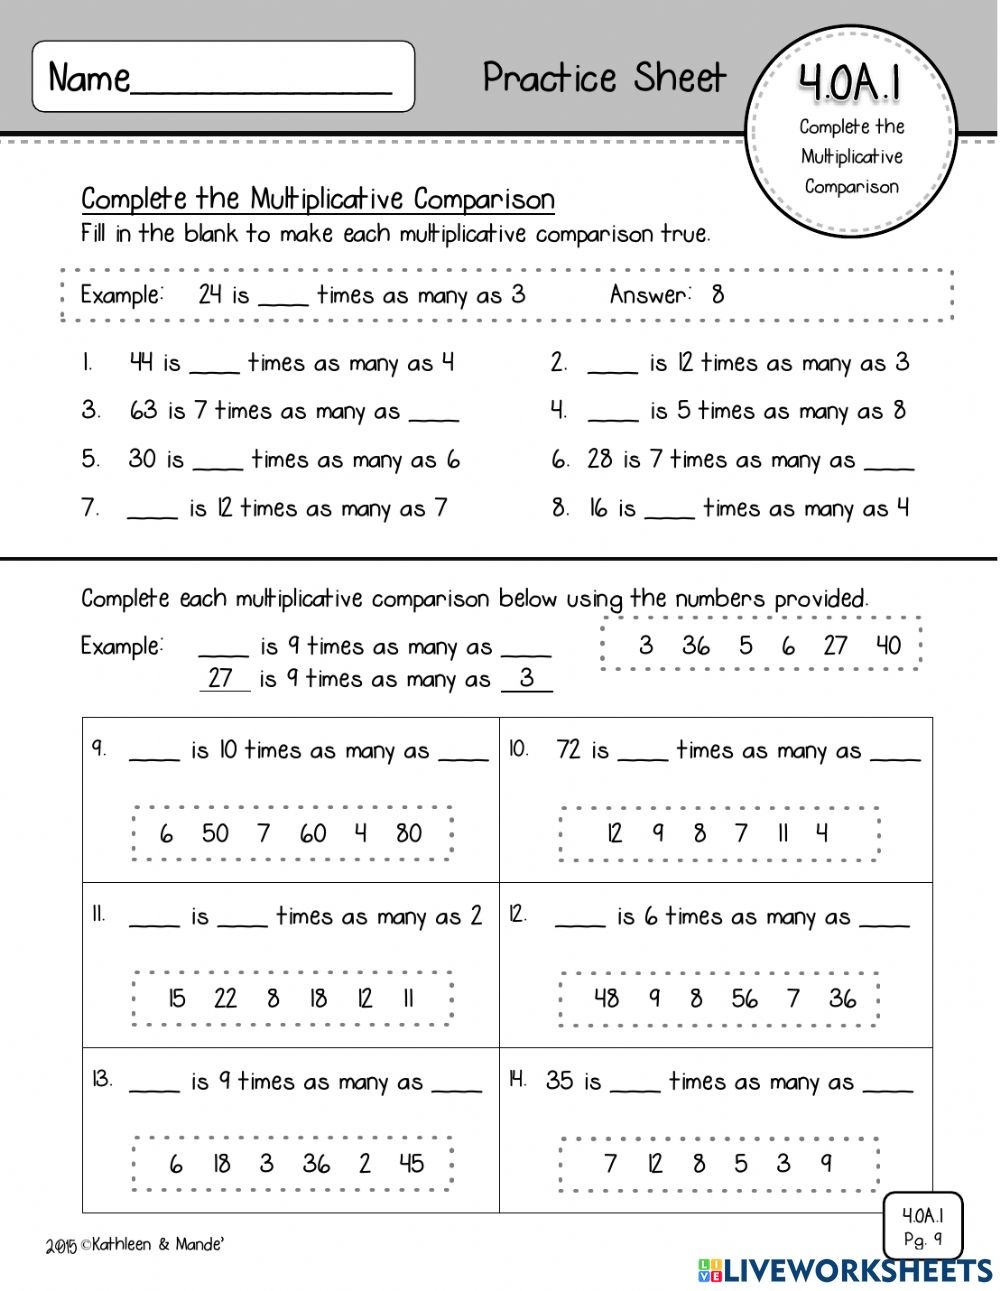 multiplication-comparisons-4th-grade-worksheets-printable-worksheets